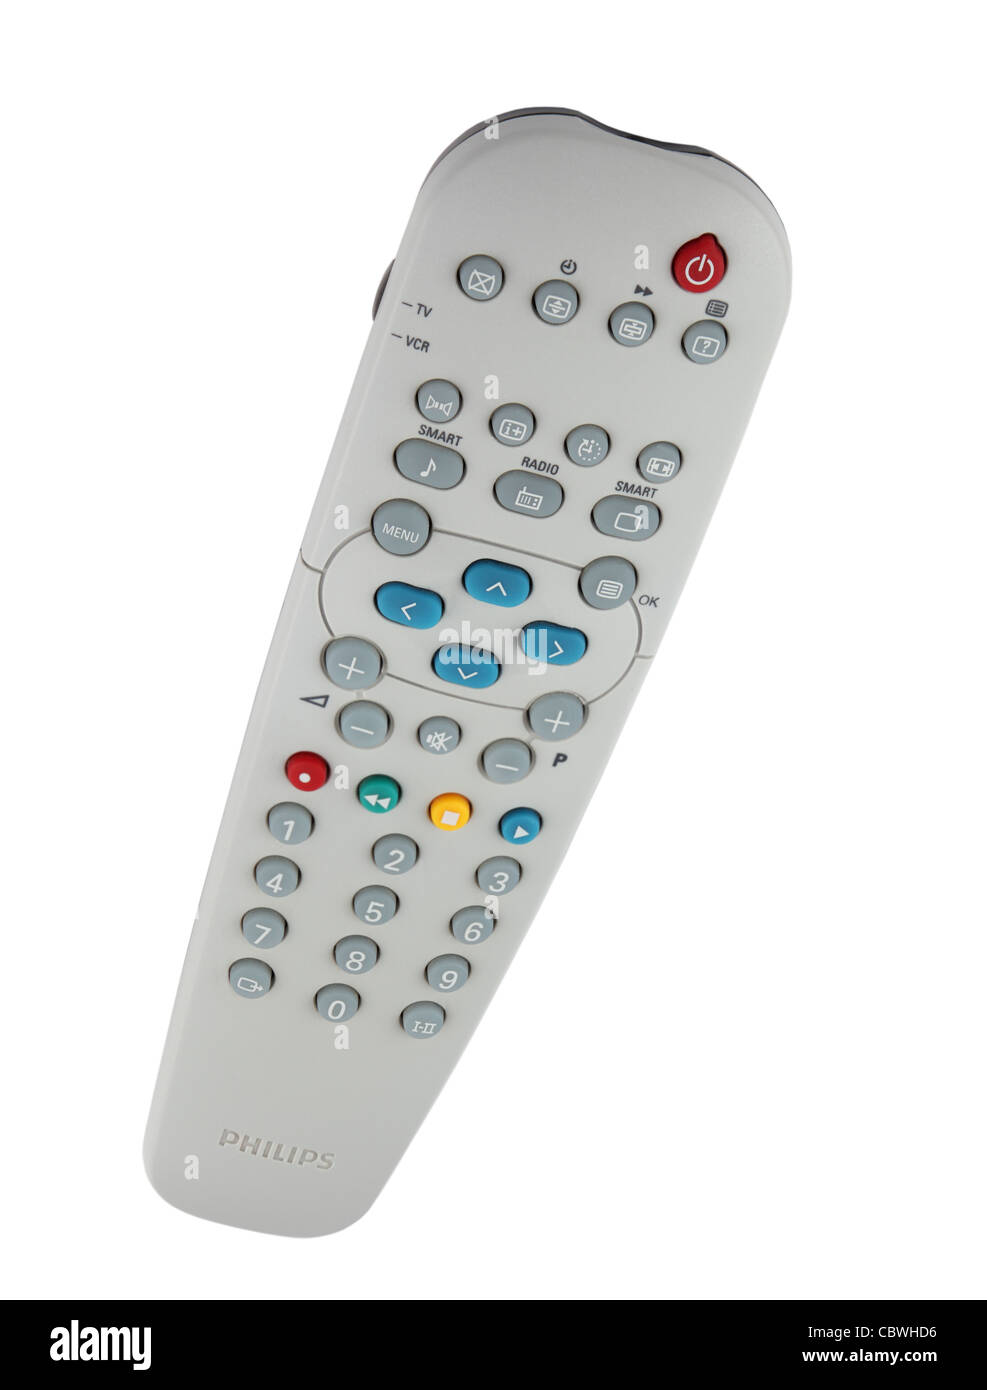 Ein Philips TV Fernbedienung Gerät isoliert auf weißem Hintergrund Stockfoto